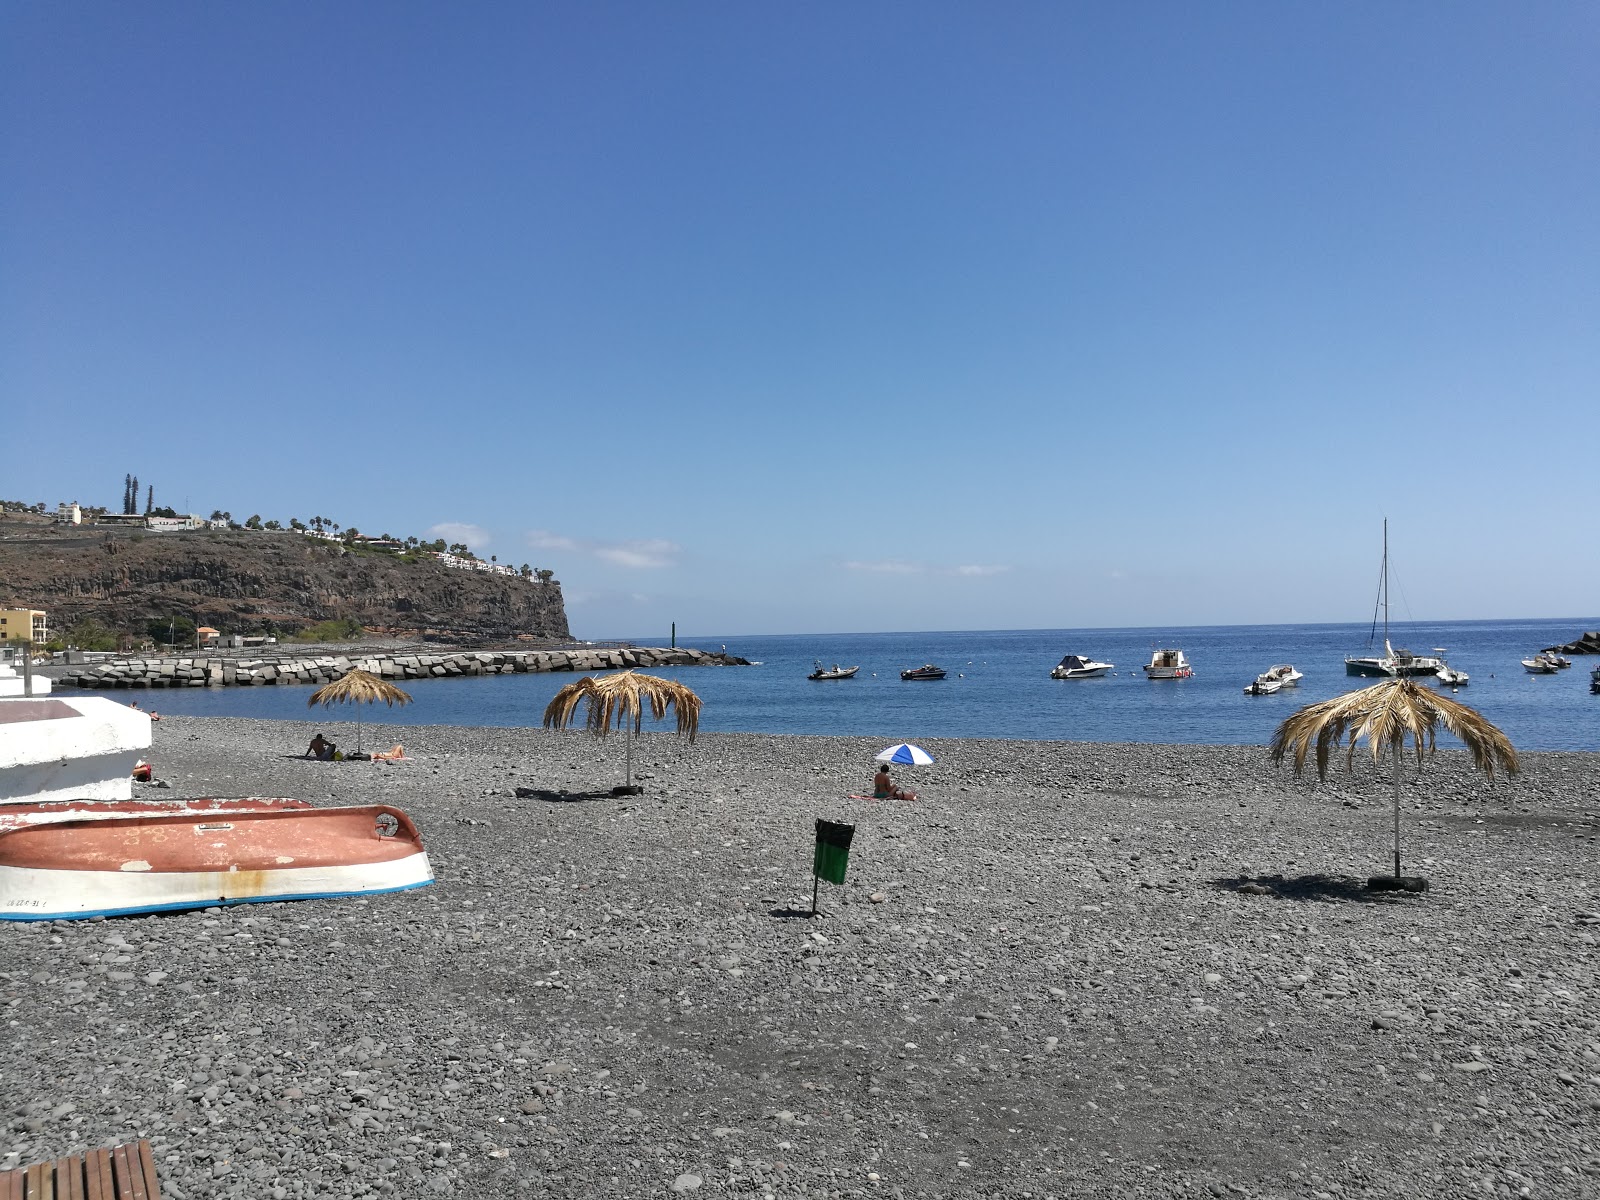 Playa de Santiago'in fotoğrafı çok temiz temizlik seviyesi ile